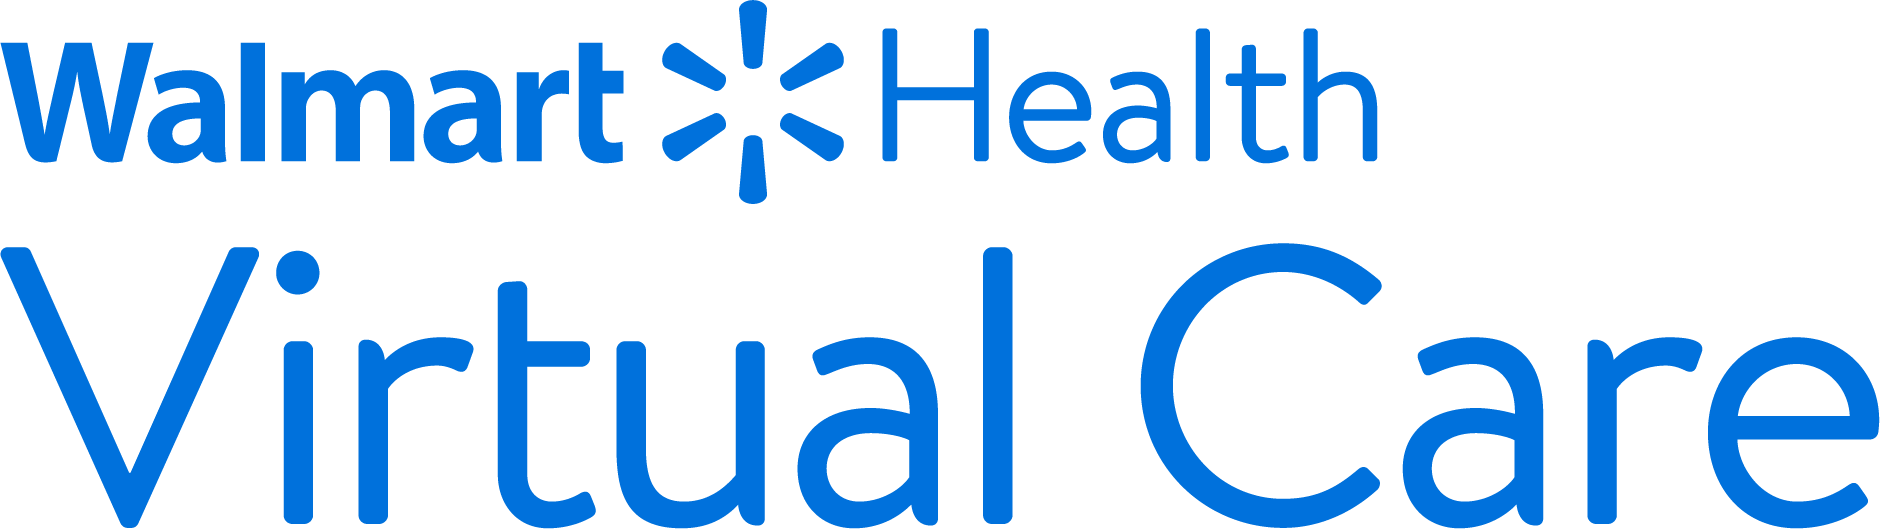 Walmart Health Virtual Care - 24/7 Telehealth